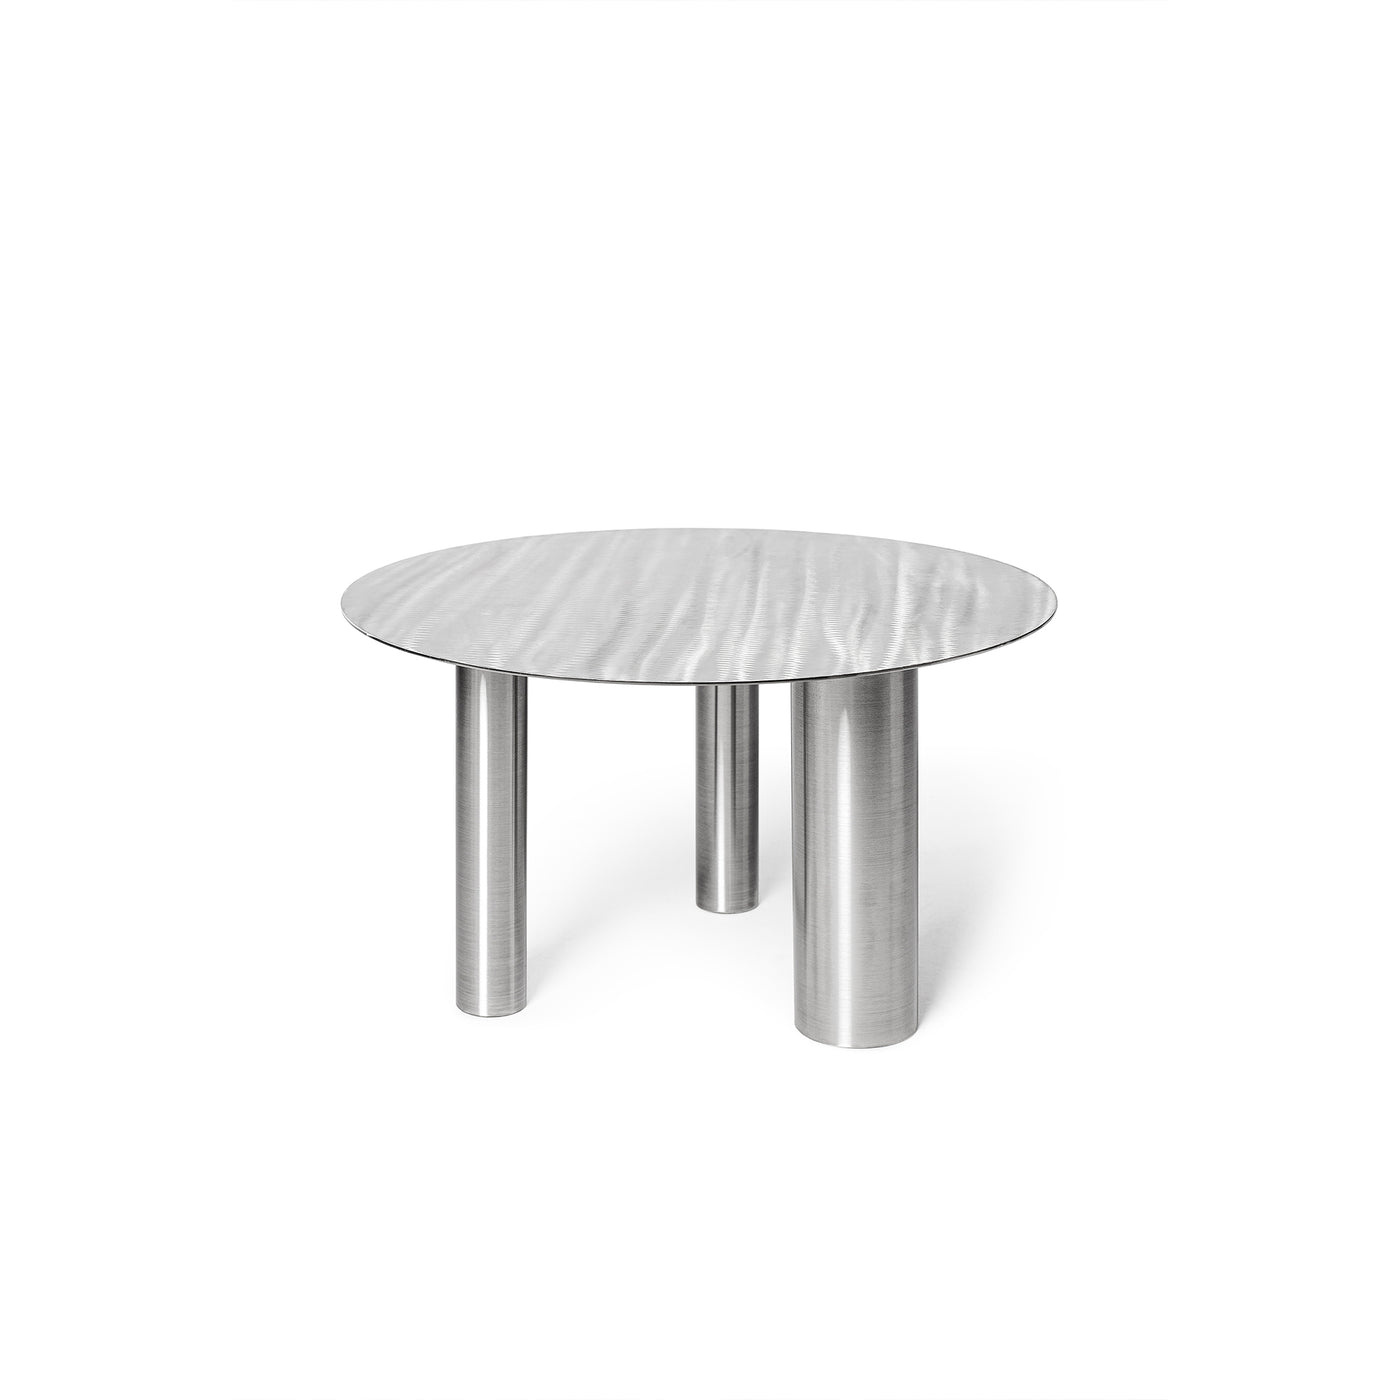 Designový konferenční stolek, ocelový konferenčí stůl, designový nábytek, luxusní vybavení do domu, nábytek do obývacího pokoje, Noom home